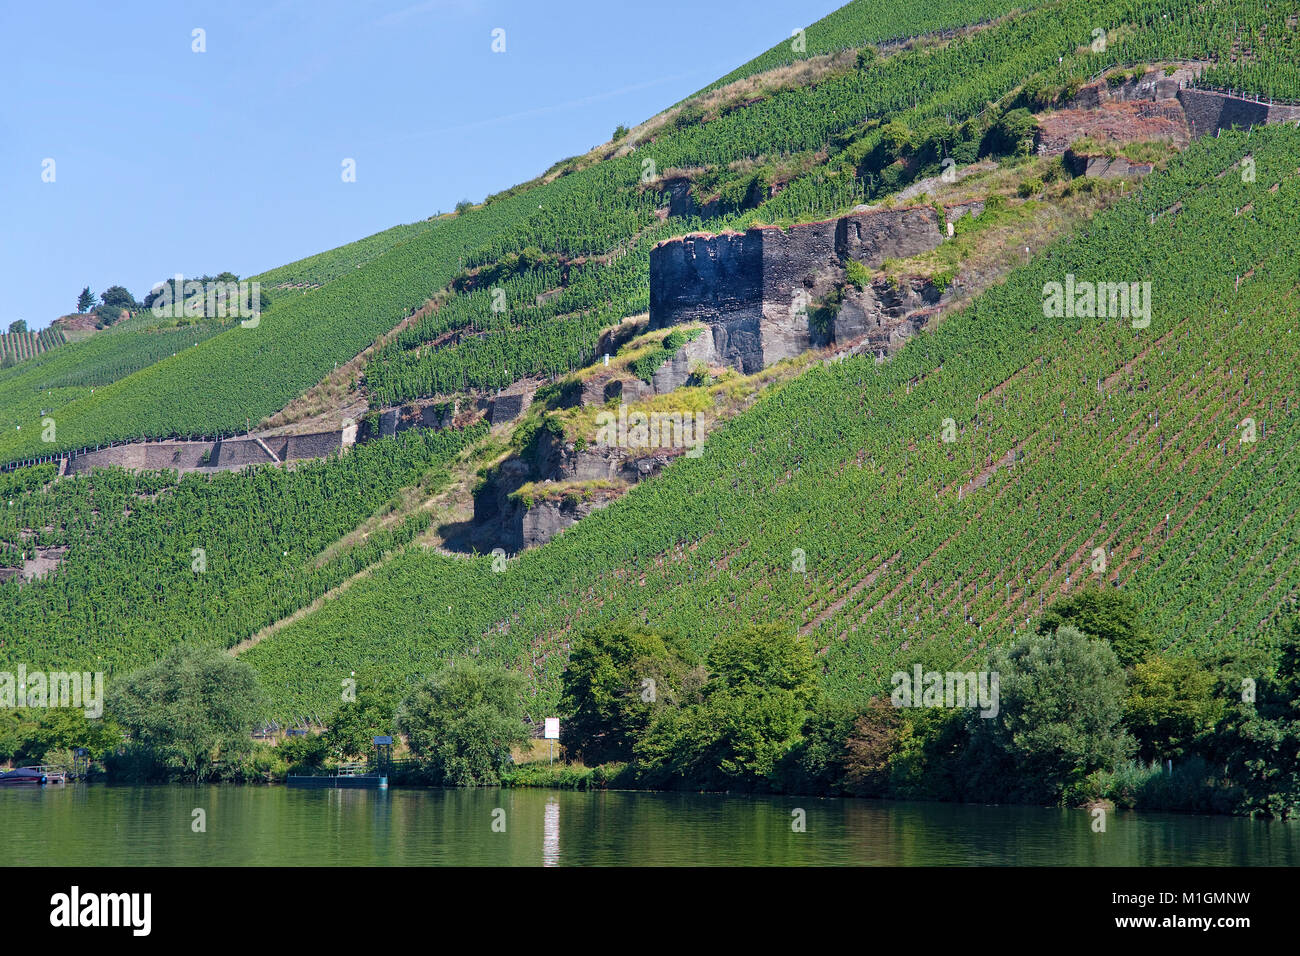 Winegrowing at riverside Zeltingen, Zeltingen-Rachtig, Moselle river, Rhineland-Palatinate, Germany, Europe Stock Photo